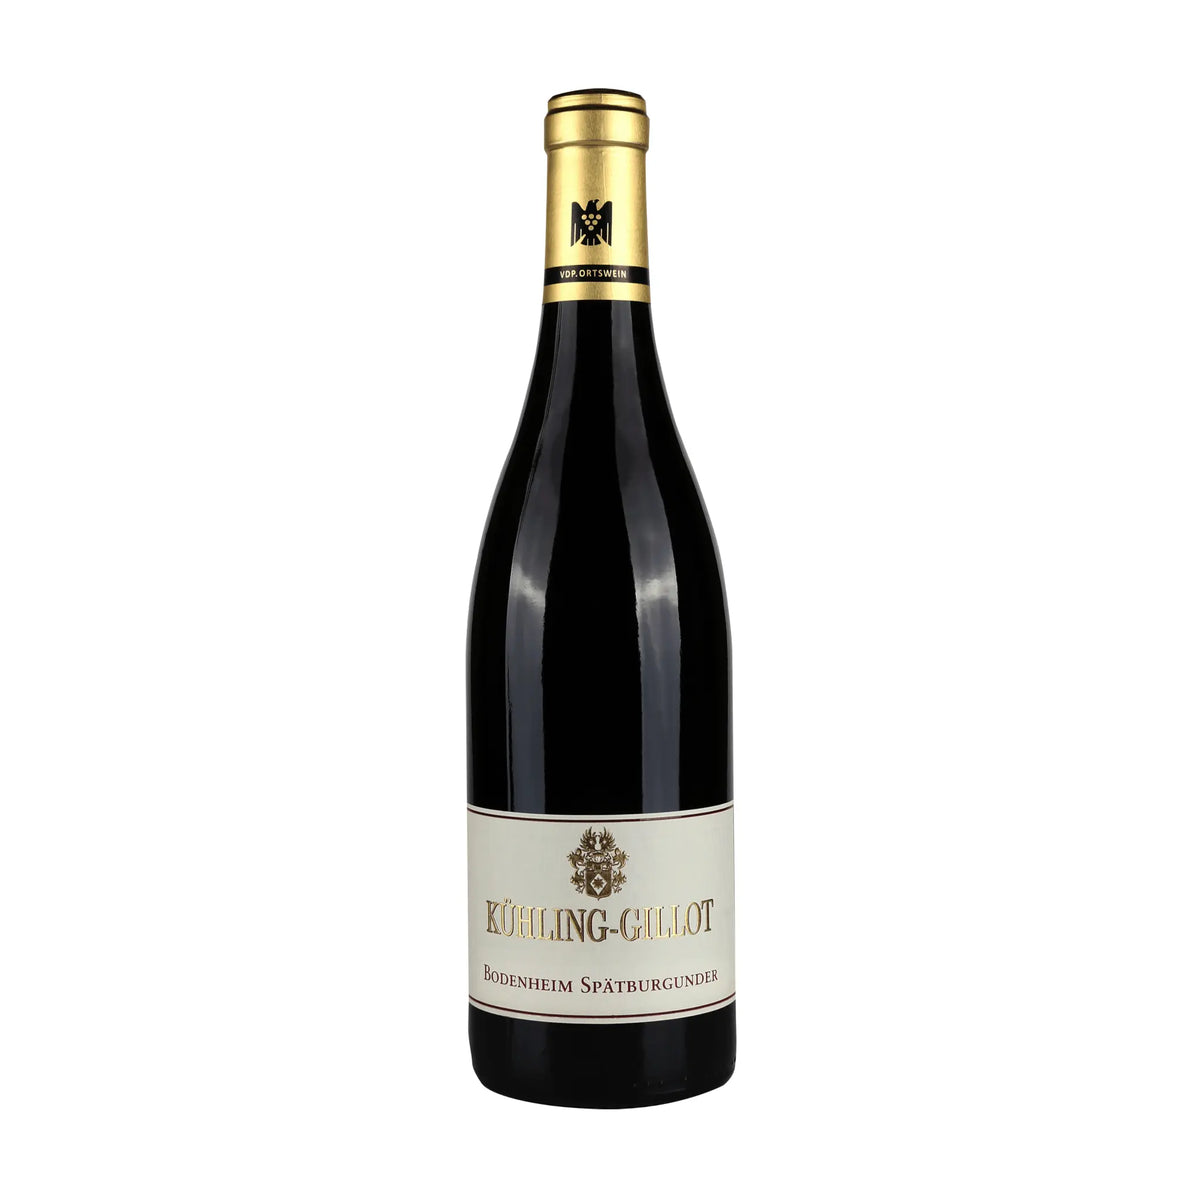 Weingut Kühling-Gillot-Rotwein-Pinot Noir-Deutschland-Rheinhessen-2019 Bodenheim Spätburgunder-WINECOM